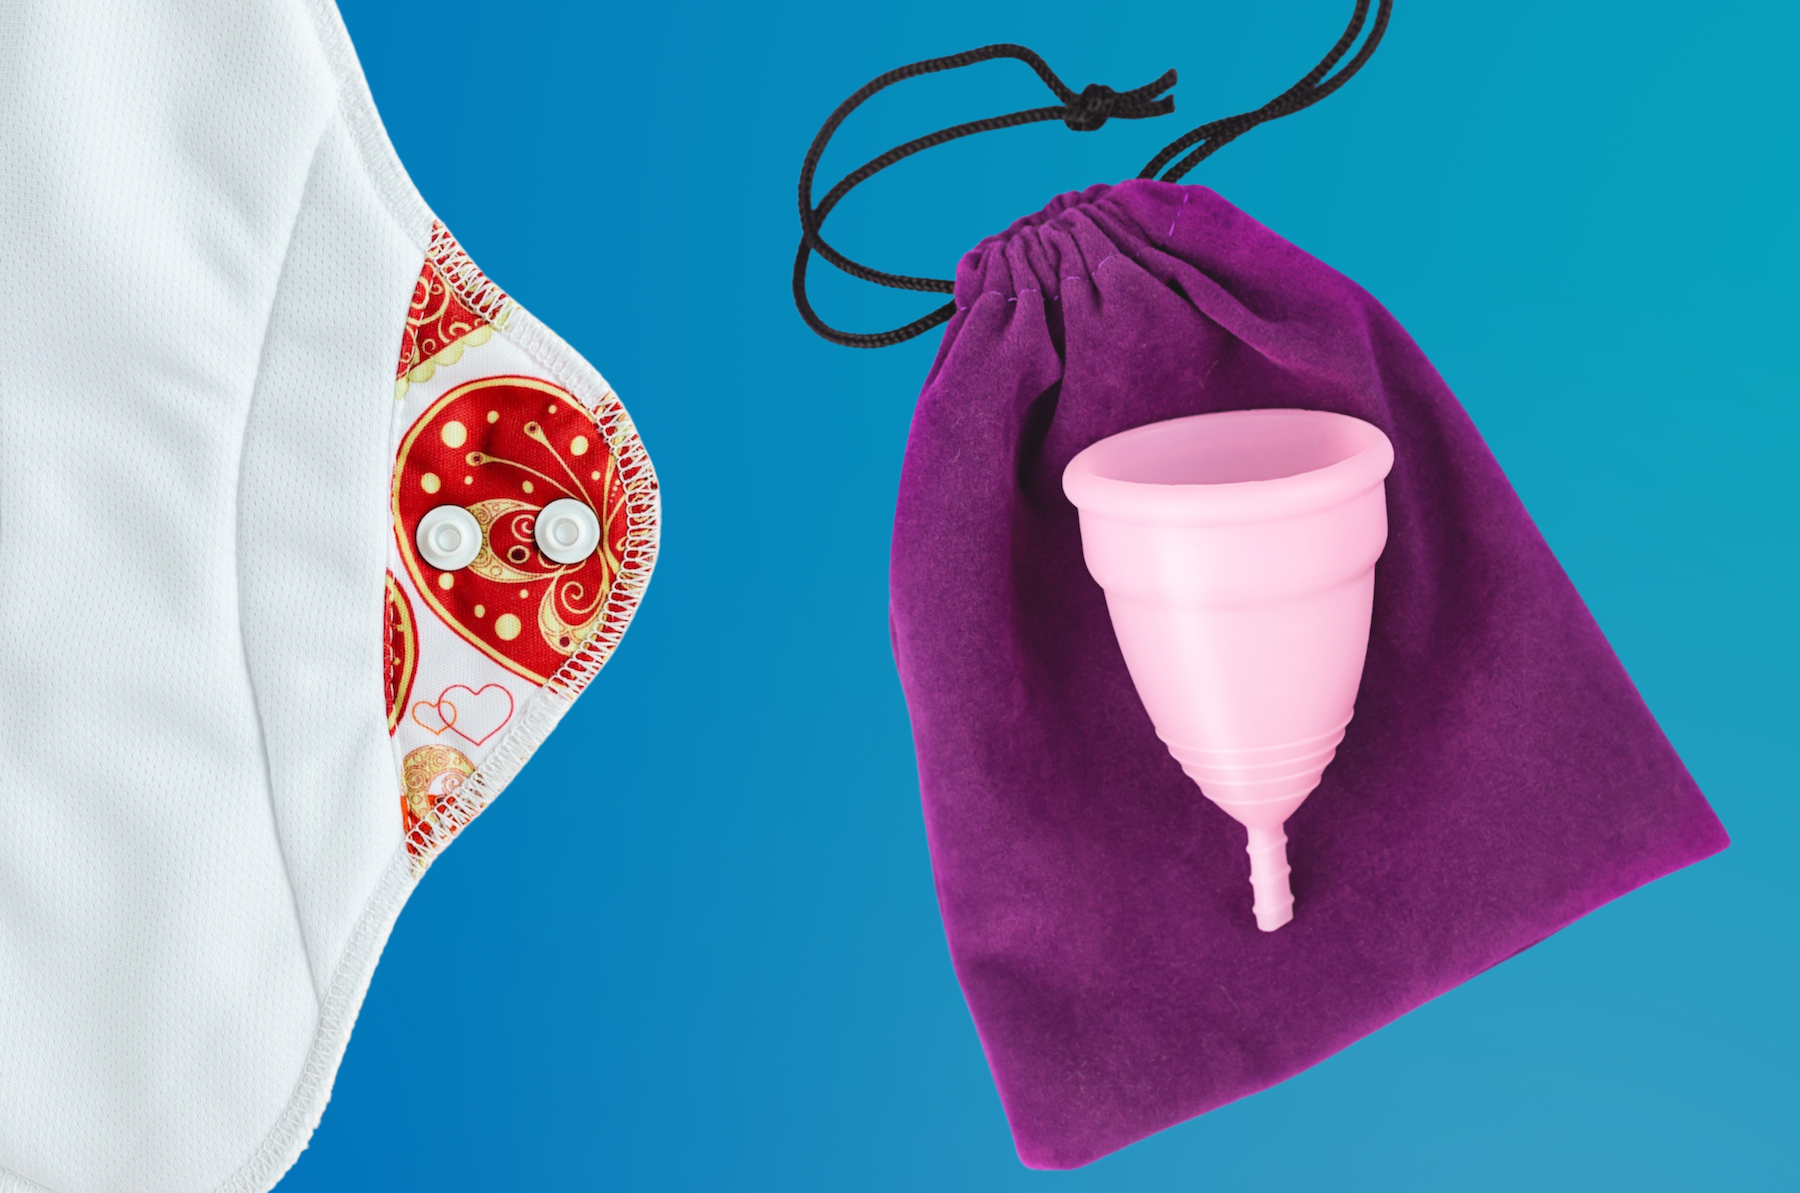 A cloth menstrual pad and a reusable menstrual cup